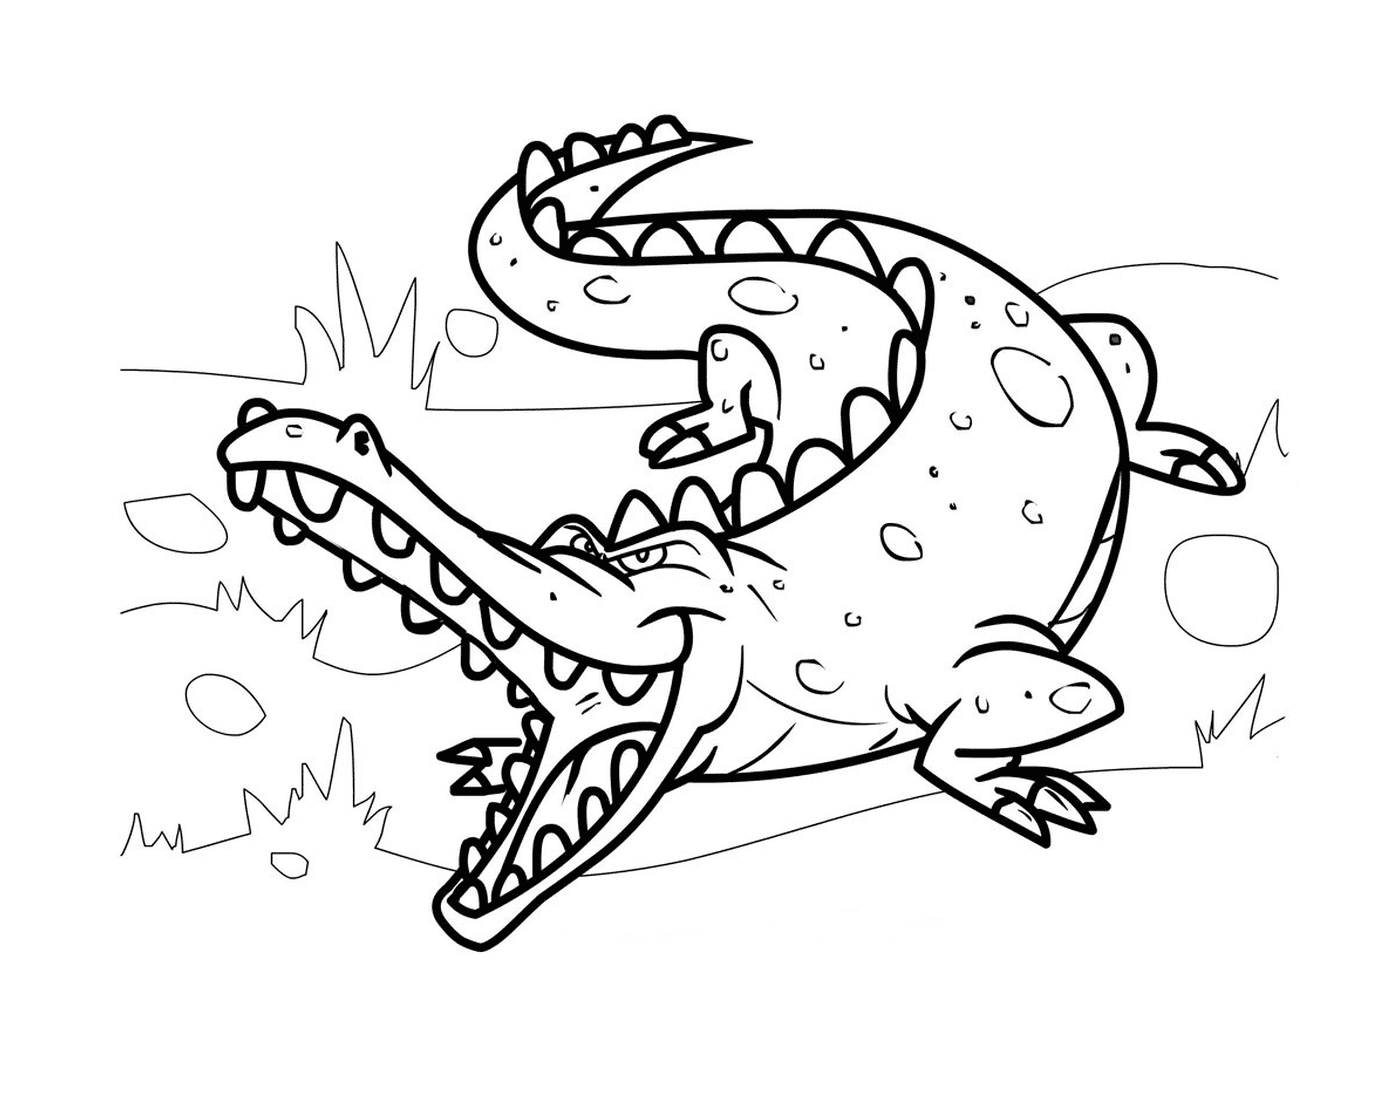  Ein mittelgroßes Krokodil in seinem natürlichen Lebensraum, im Cartoon-Stil 